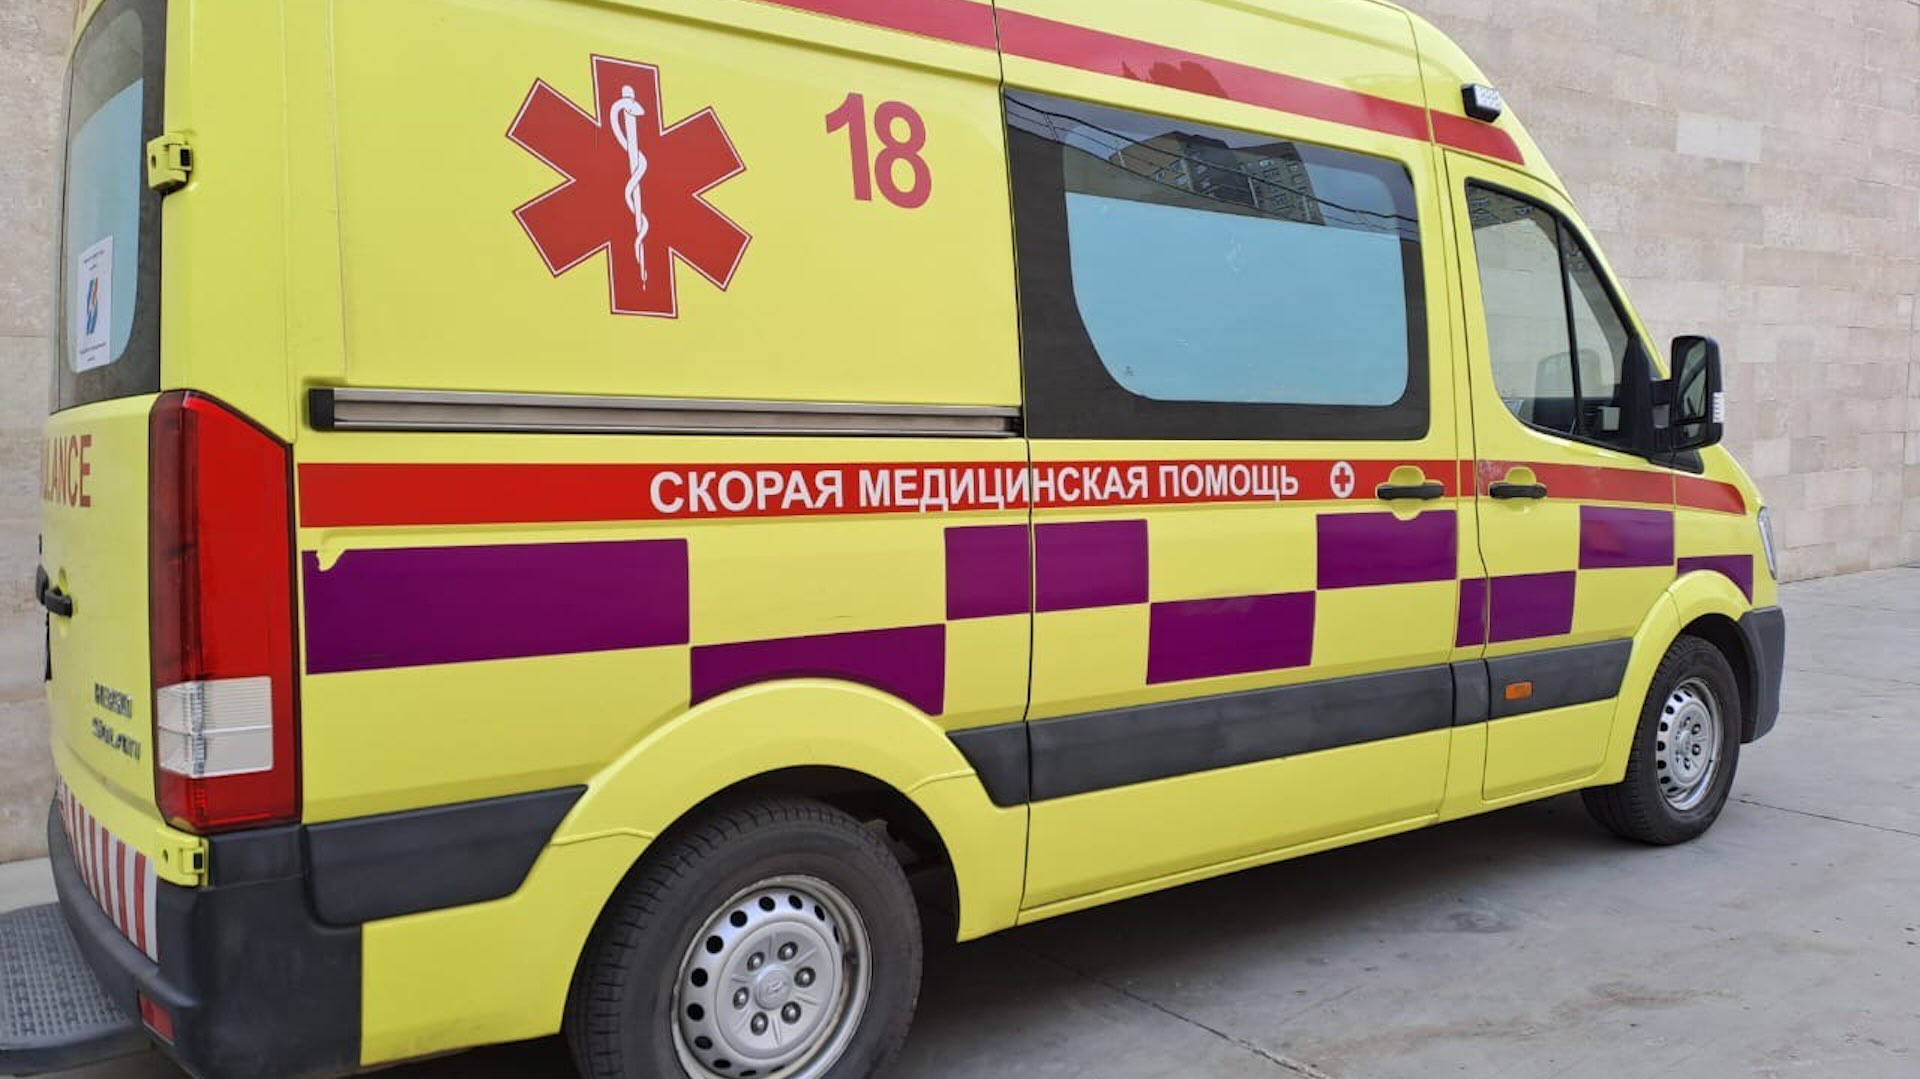 В Алматы избили врача и фельдшера при нападении после вызова скорой помощи